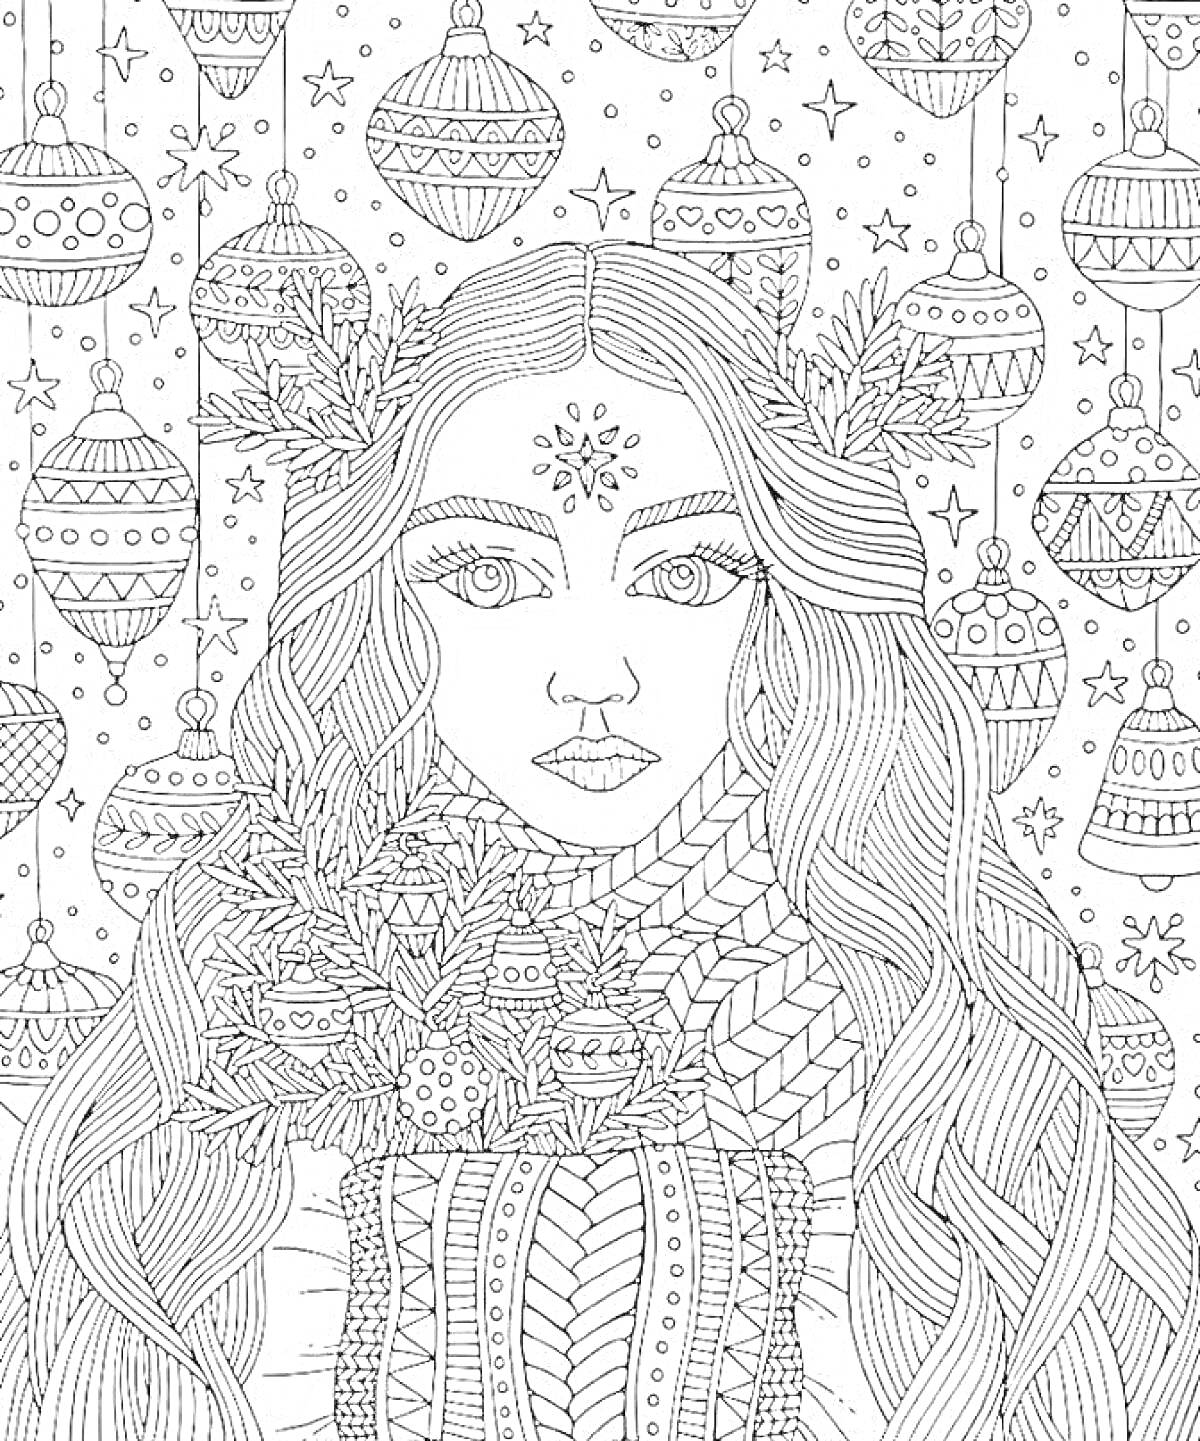 Раскраска Портрет девушки с длинными волосами, украшениями на голове и в руках, на фоне новогодних игрушек и звезд